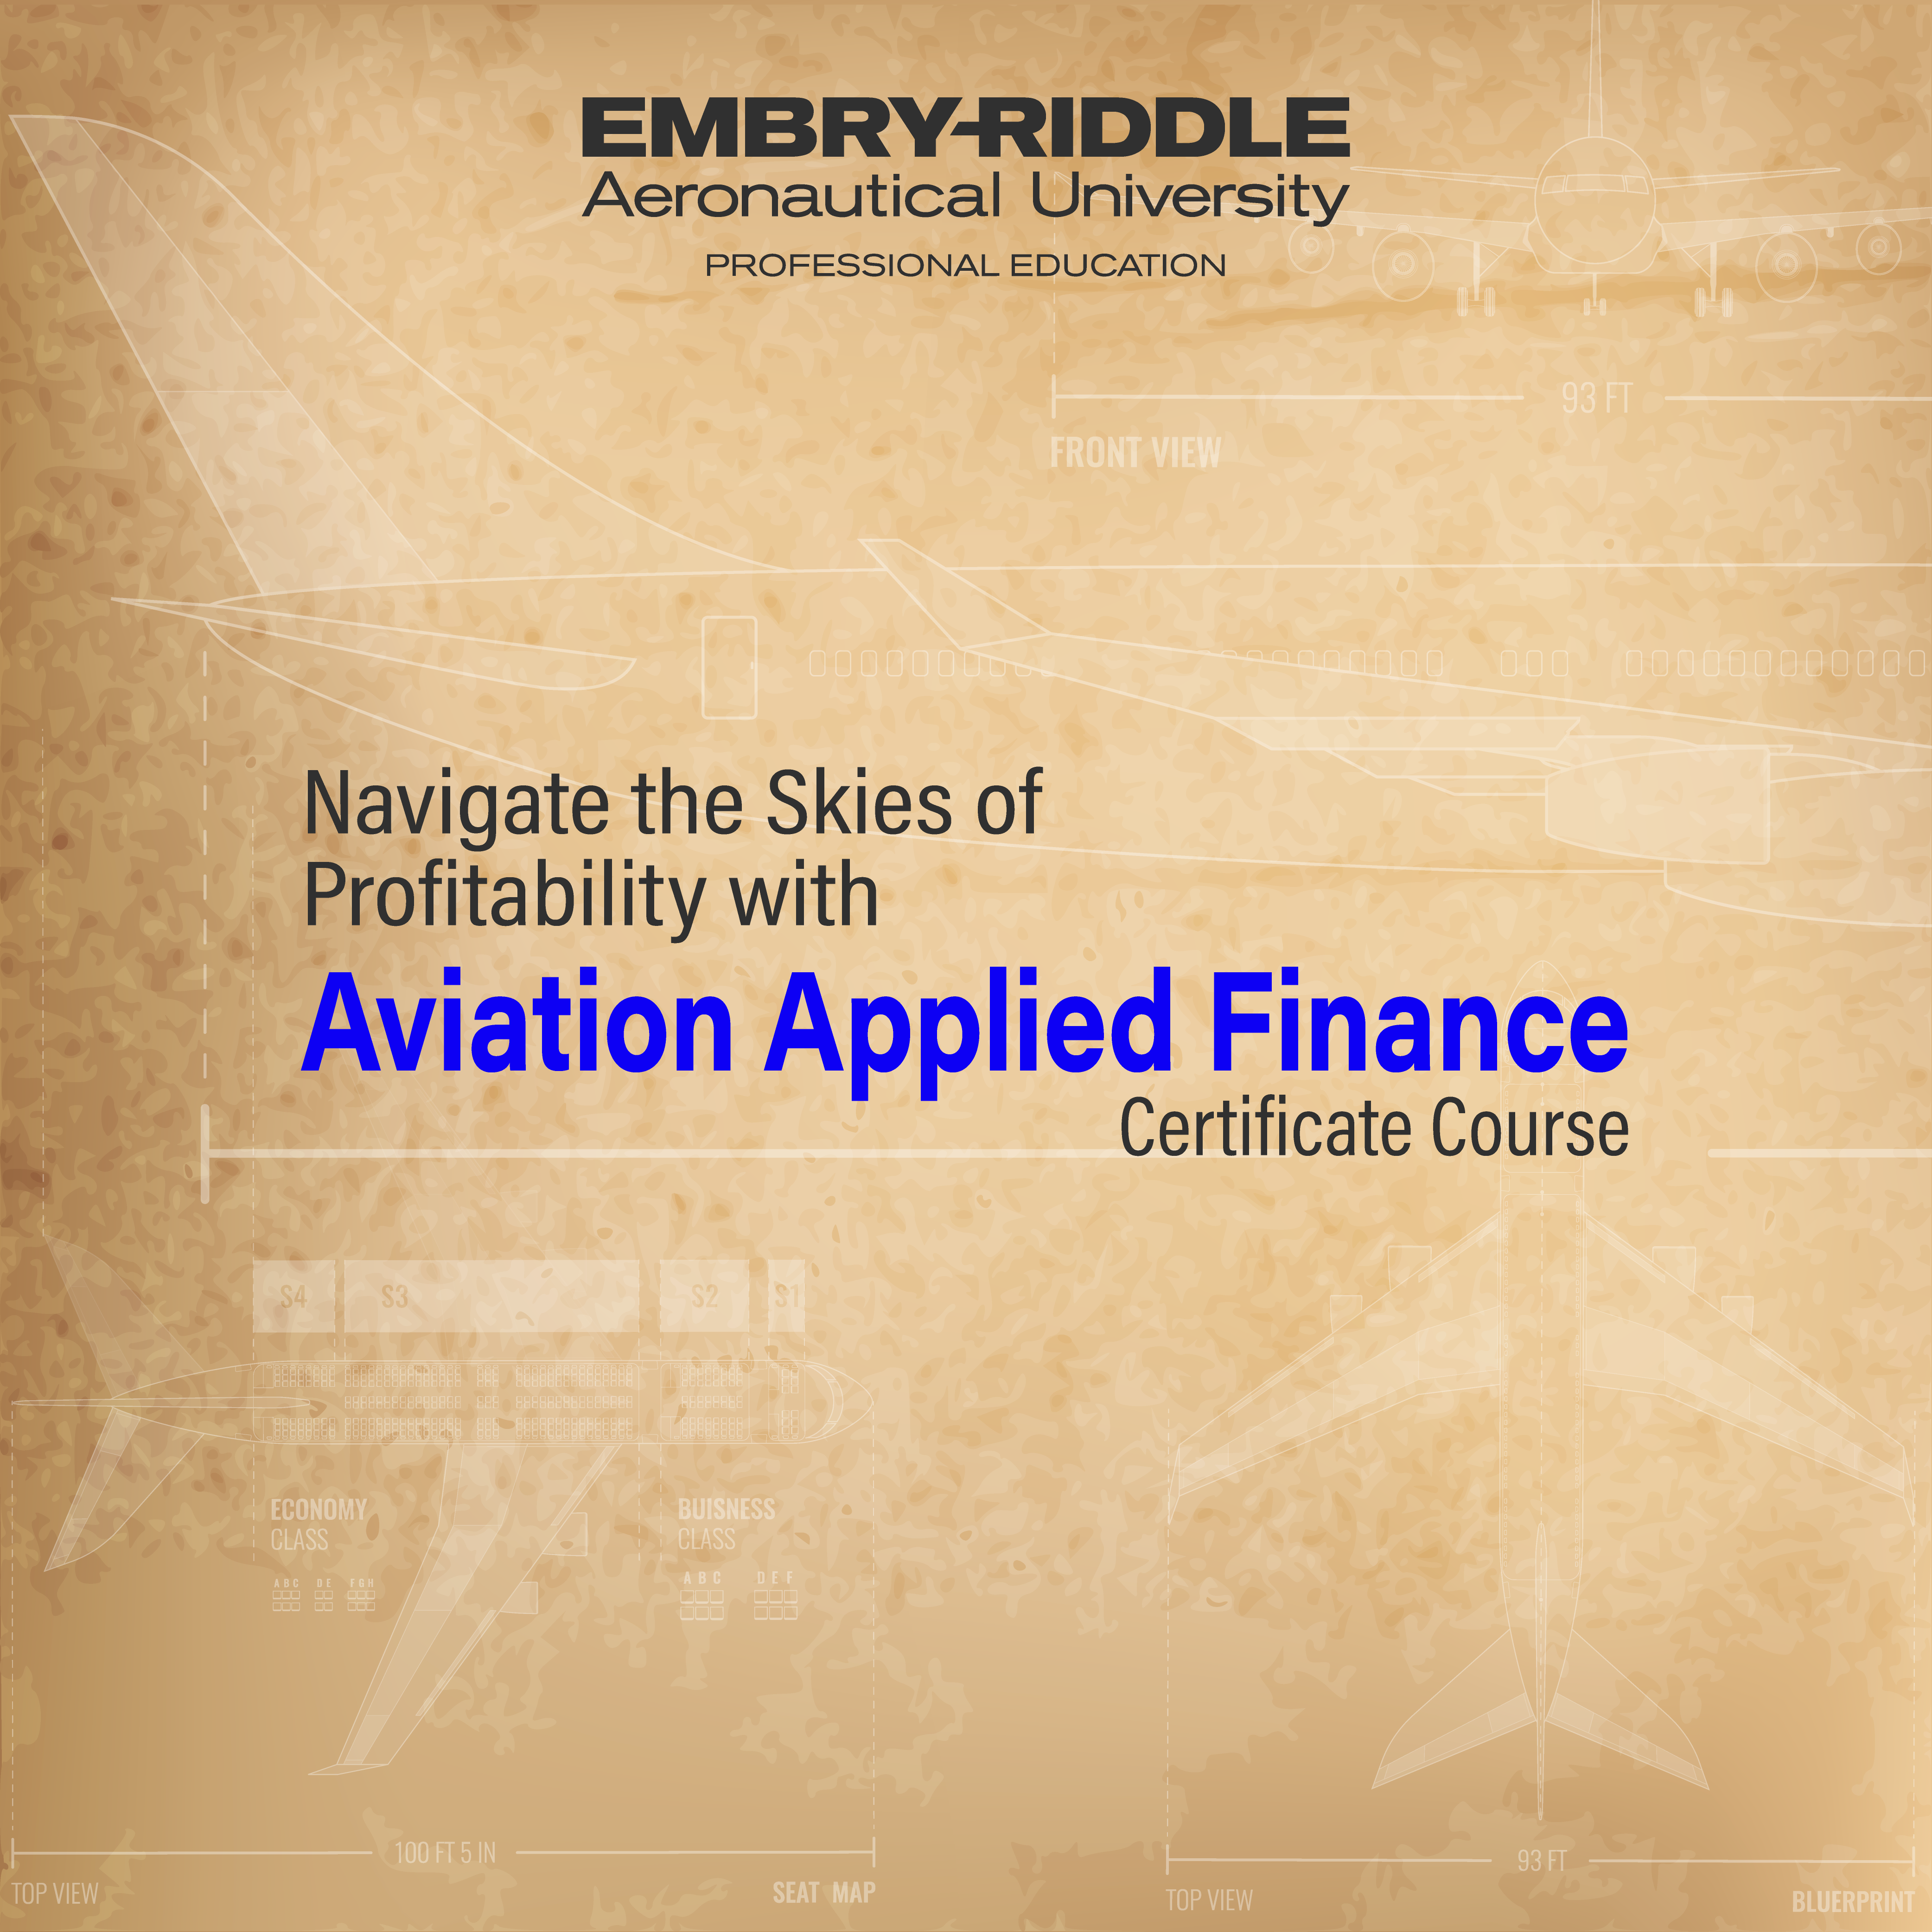 Aviation Applied Finance